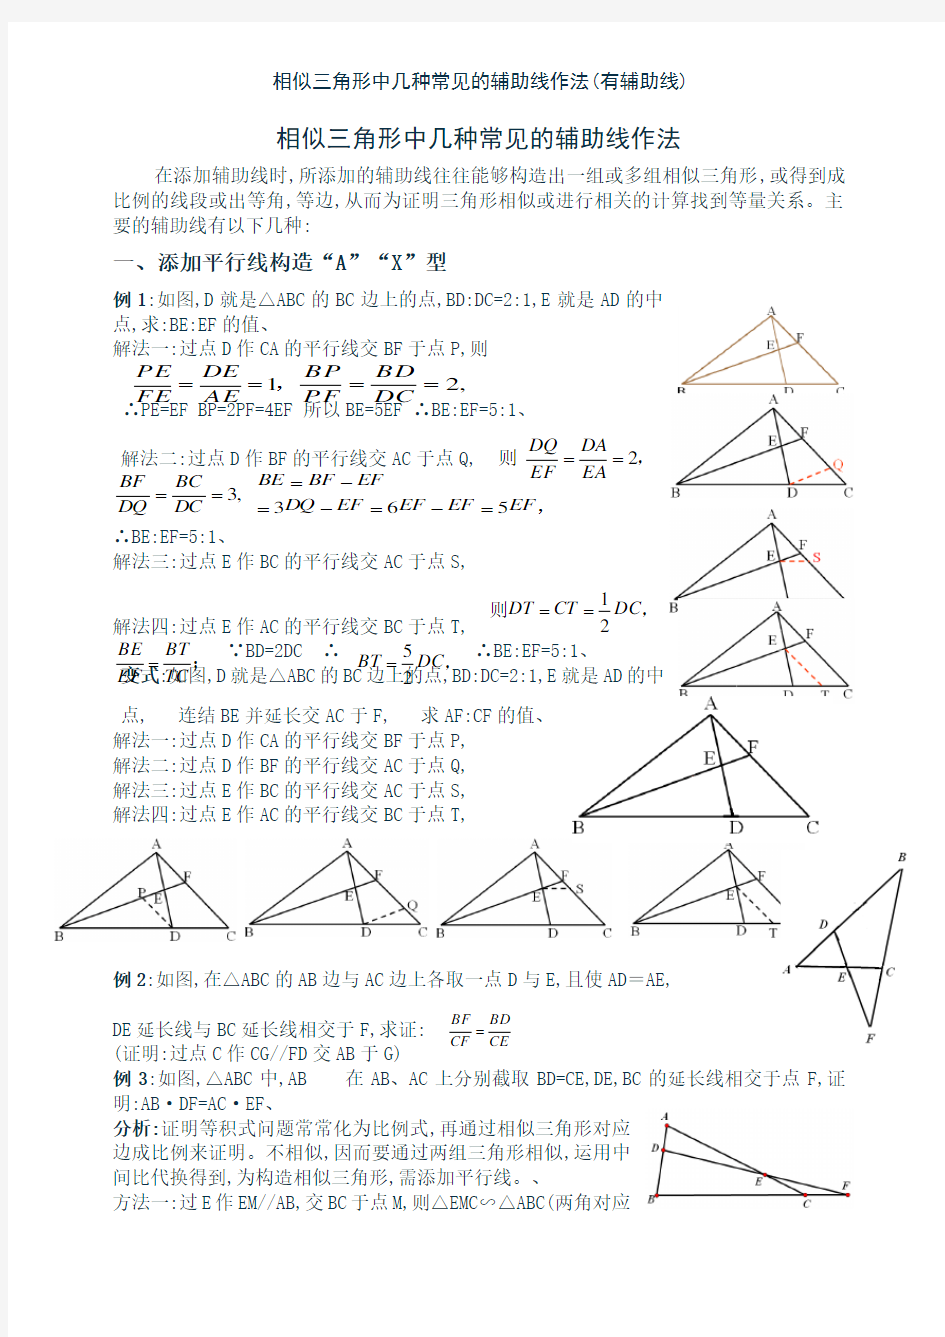 相似三角形中几种常见的辅助线作法(有辅助线)